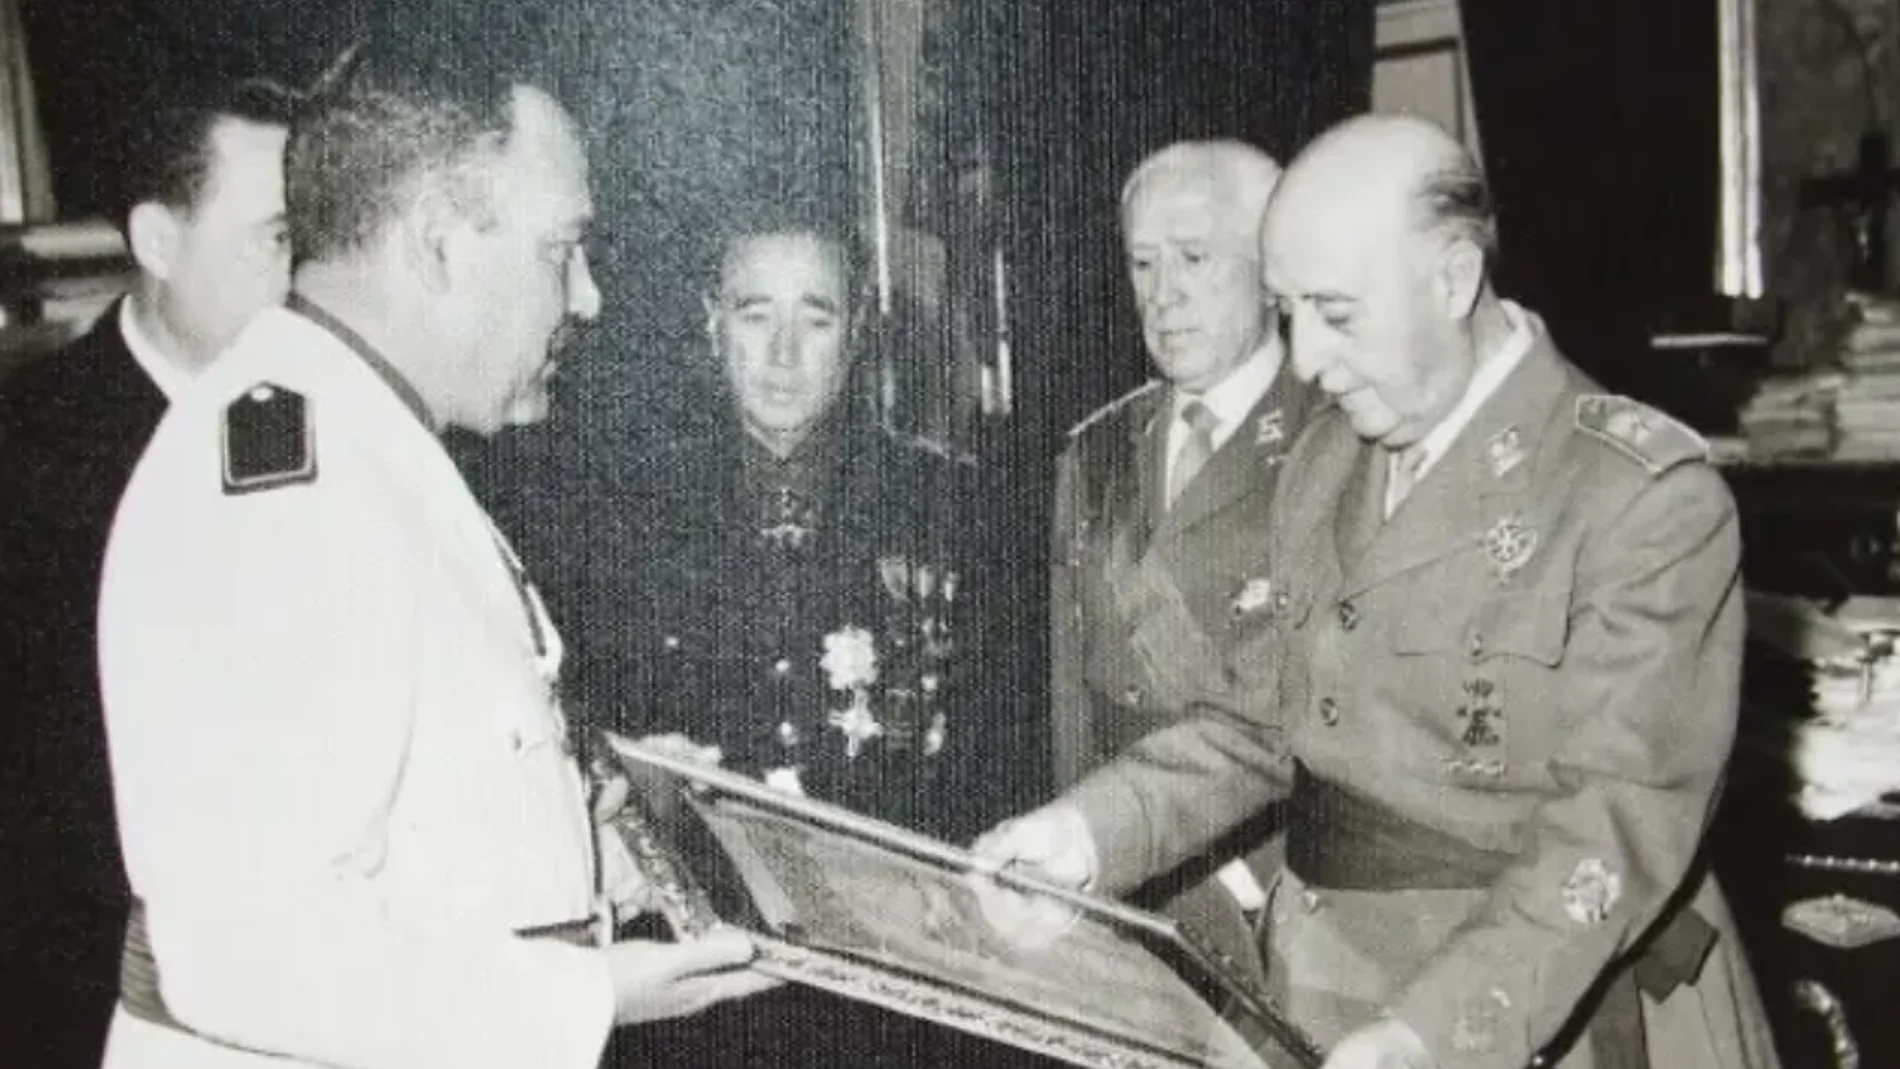 El entonces alcalde, Lucas Guirao, otorgó la distinción a Franco